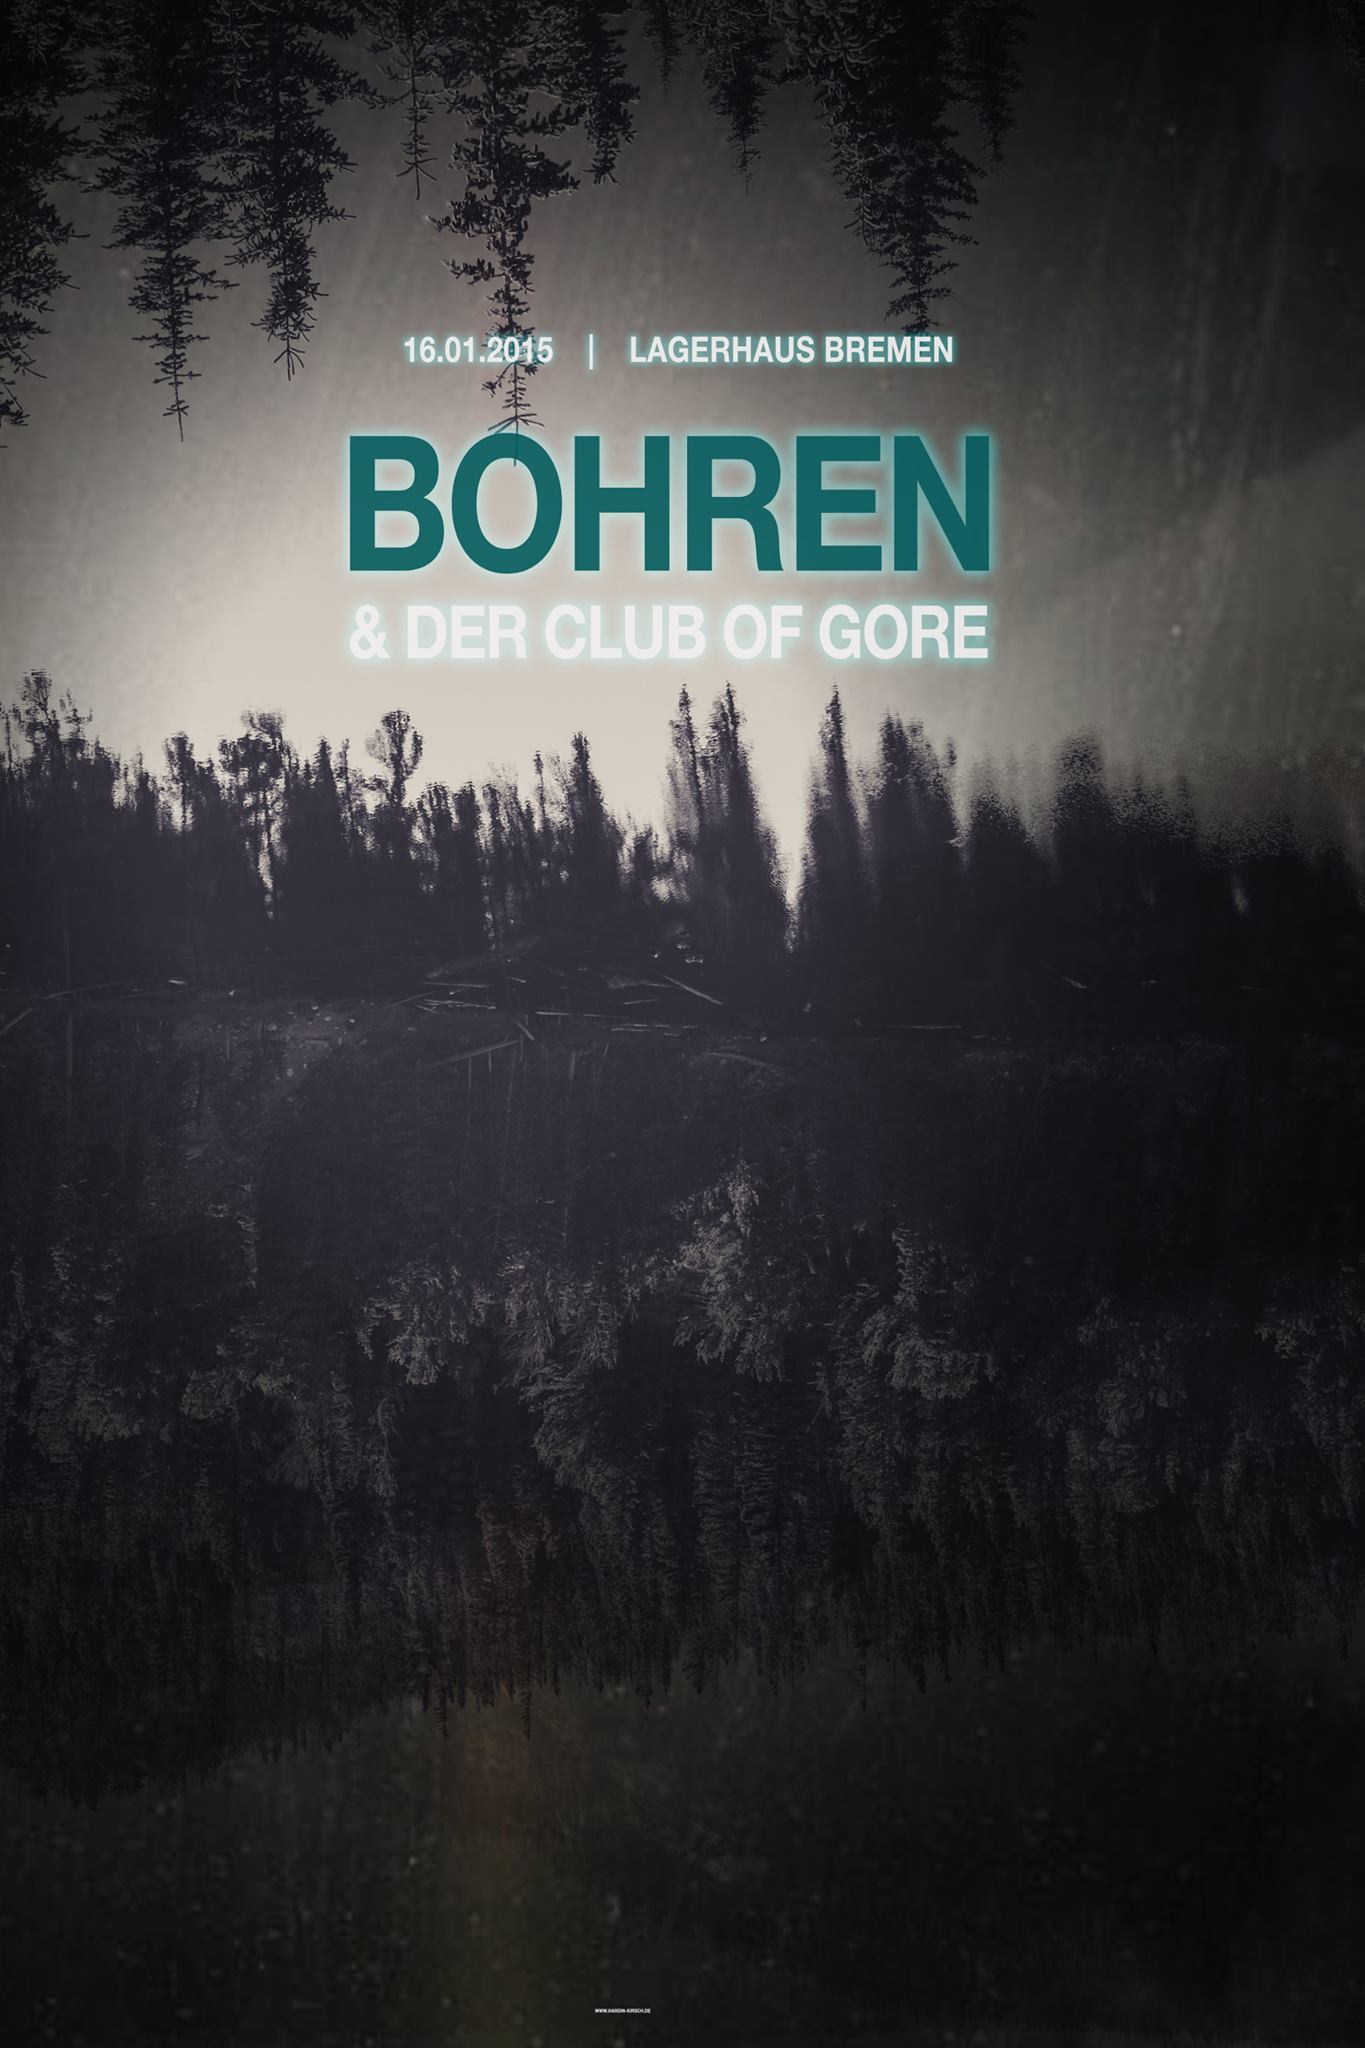 Show review: Bohren und der Club of Gore @Bremen